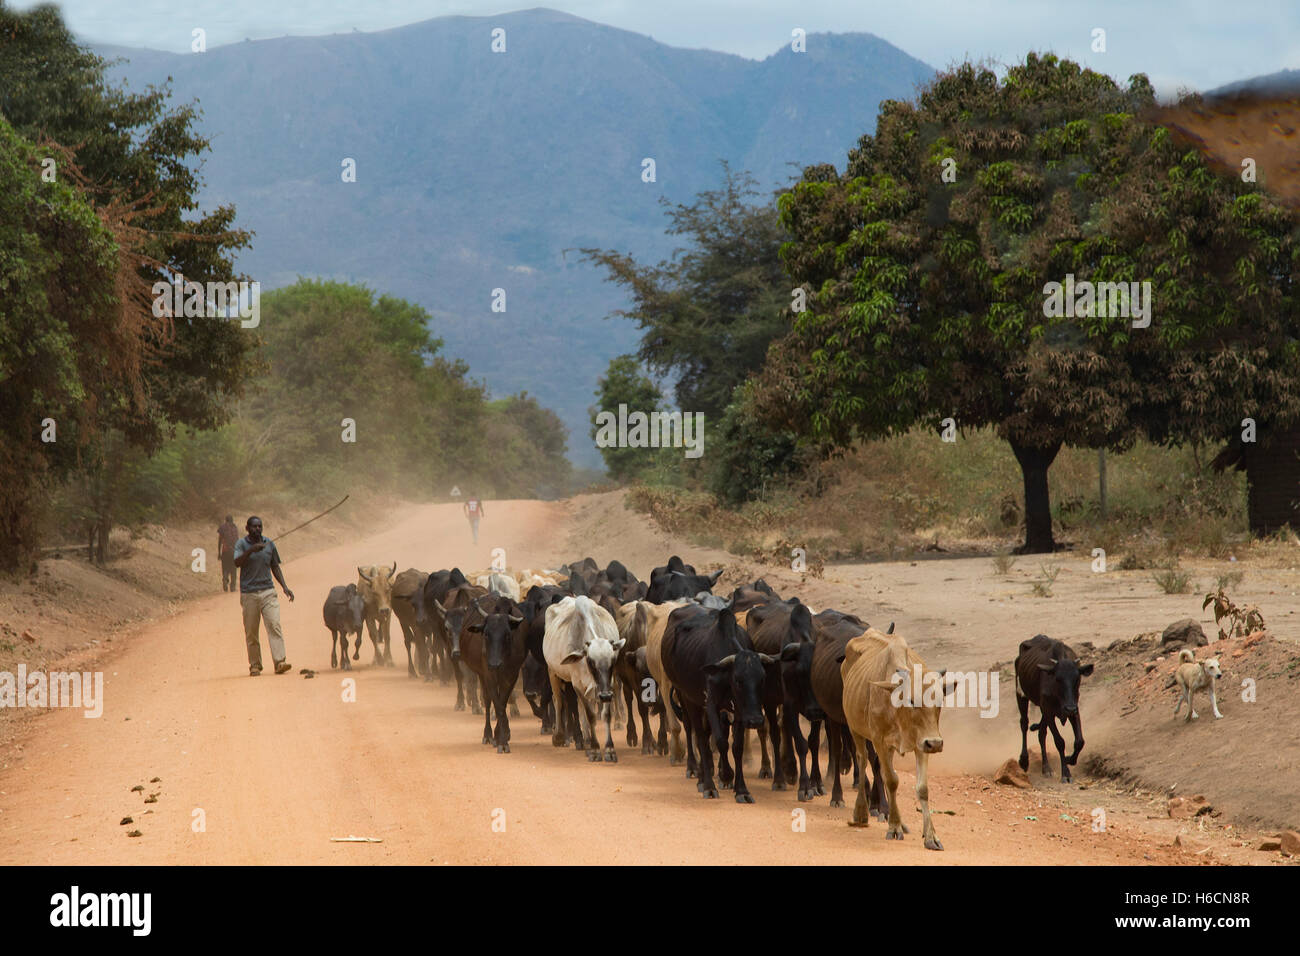 Una mandria di bovini essendo condotta lungo una strada sterrata in Tanzania con la Grande Rift valley scarpata in background Foto Stock